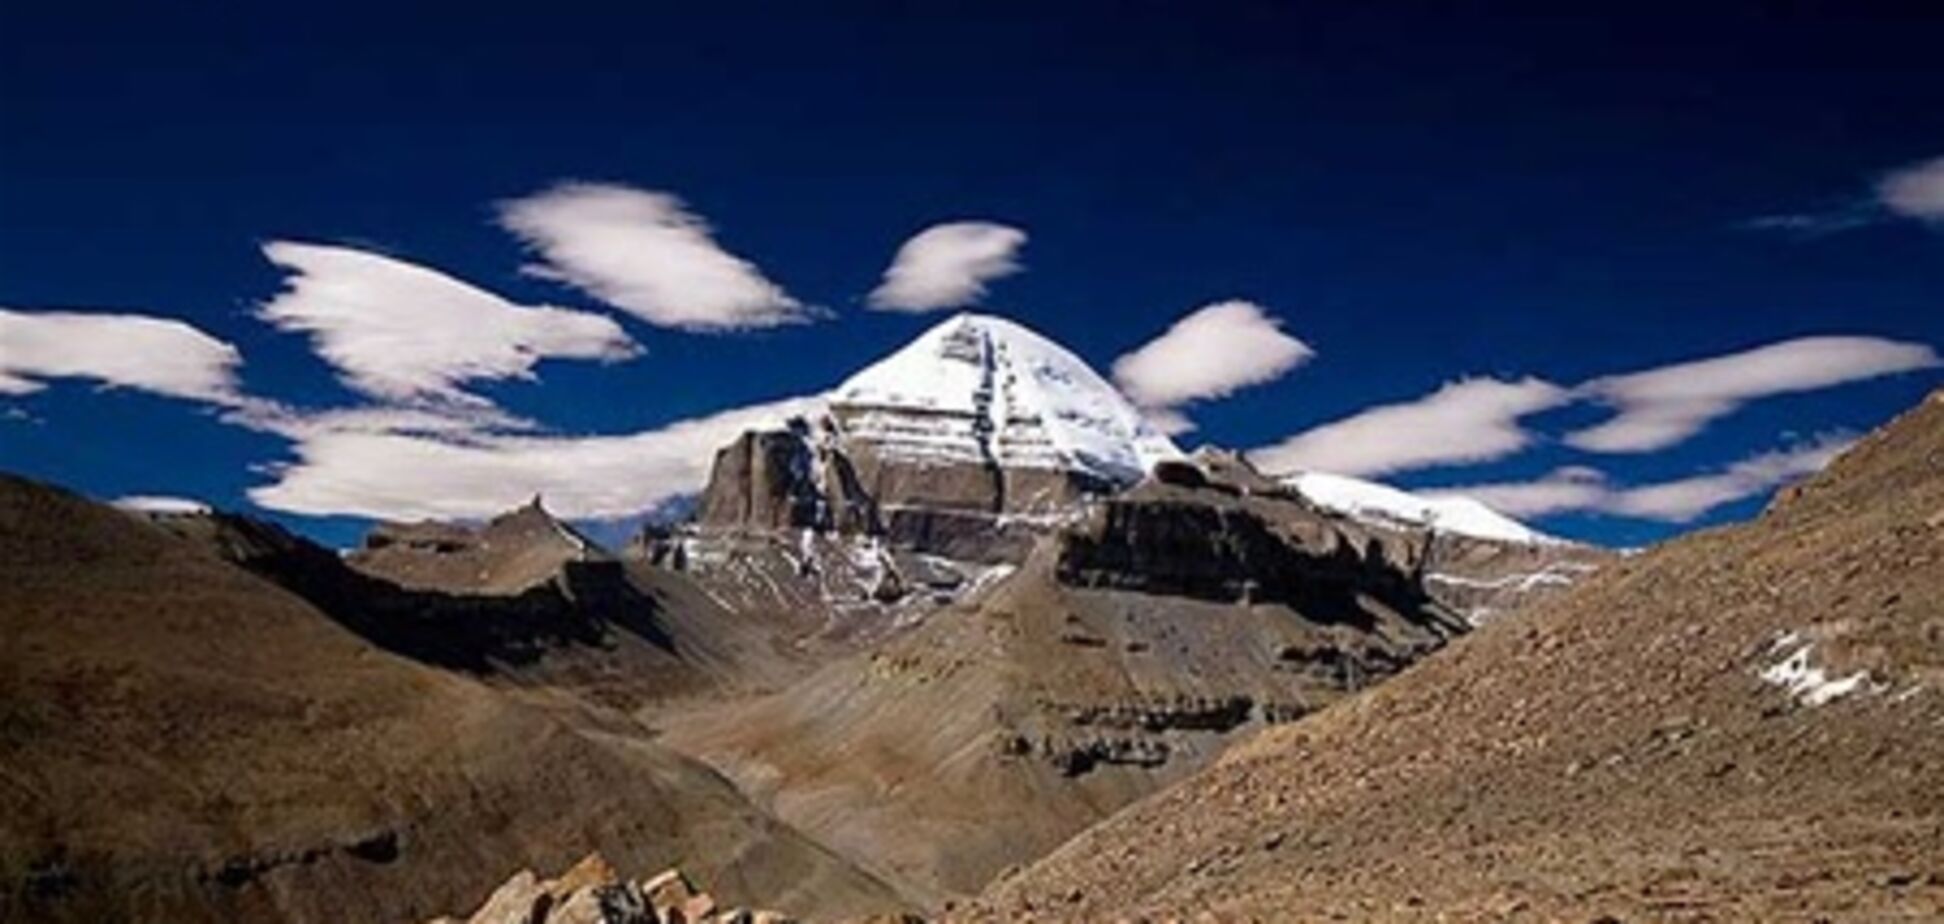 Непал представил самый протяженный и высокий горный маршрут